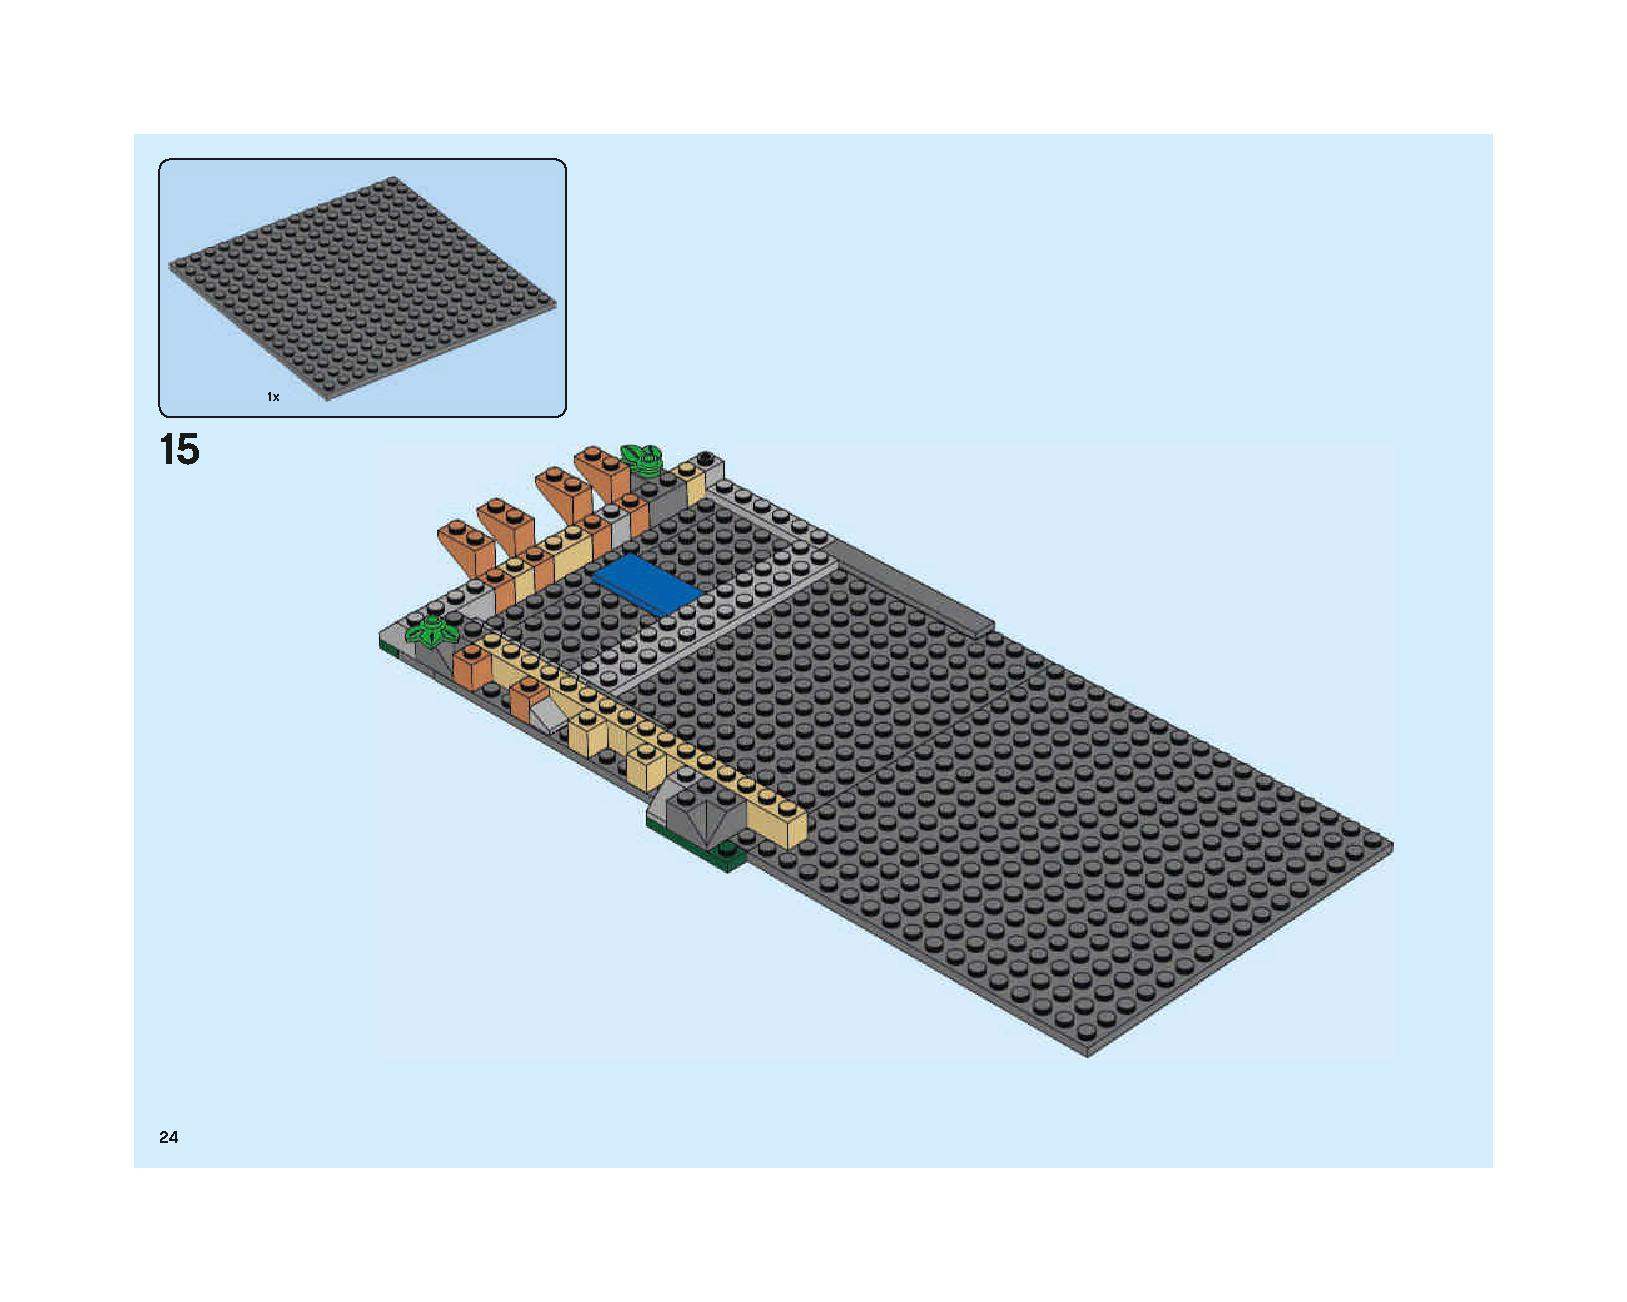 ホグワーツの大広間 75954 レゴの商品情報 レゴの説明書・組立方法 24 page